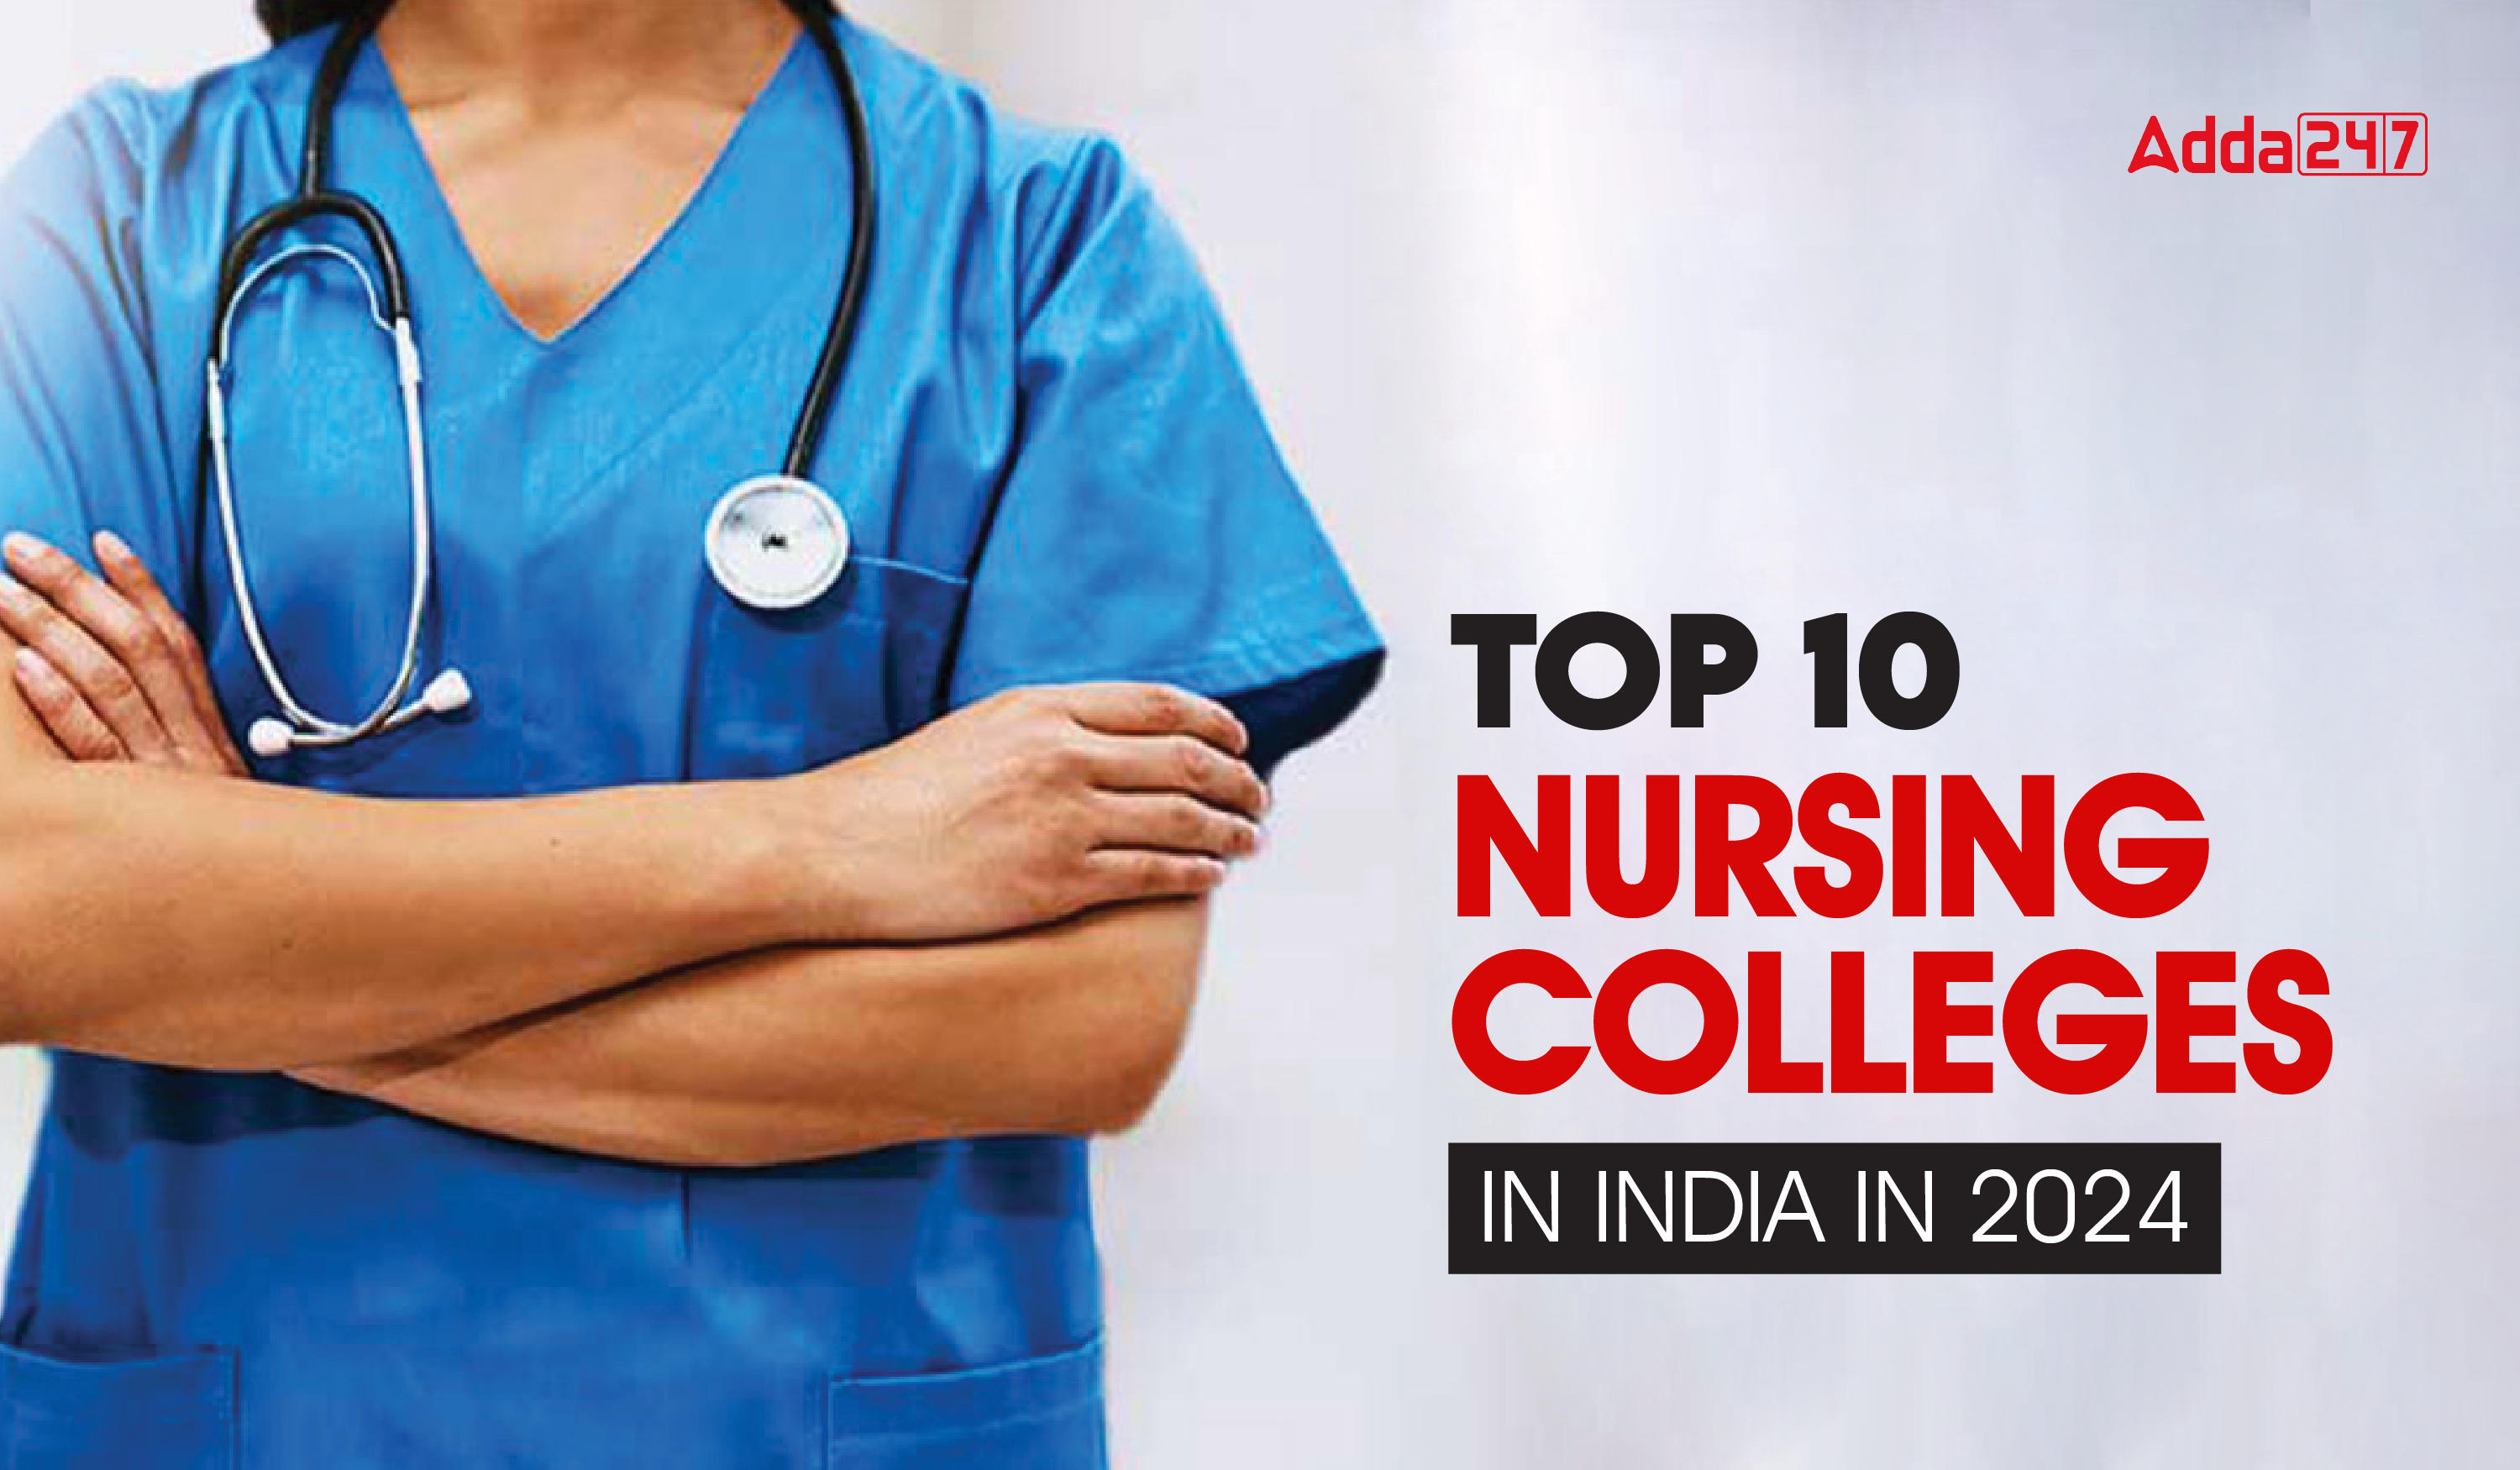 Top 10 Nursing Colleges in India in 2024